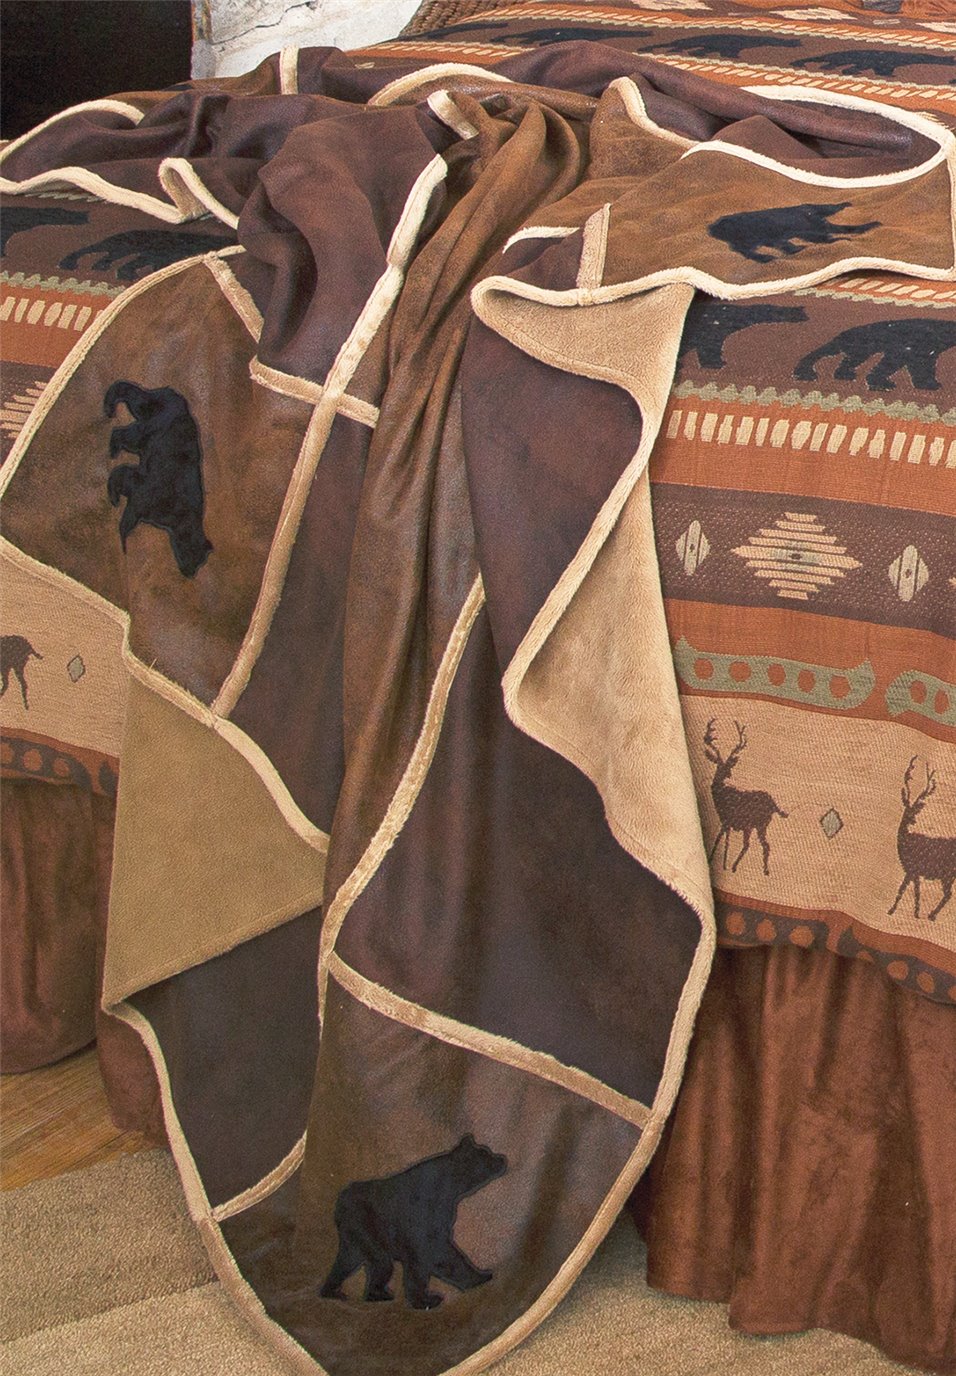 Carstens Rustic Cabin Black Bear Grid Throw Blanket